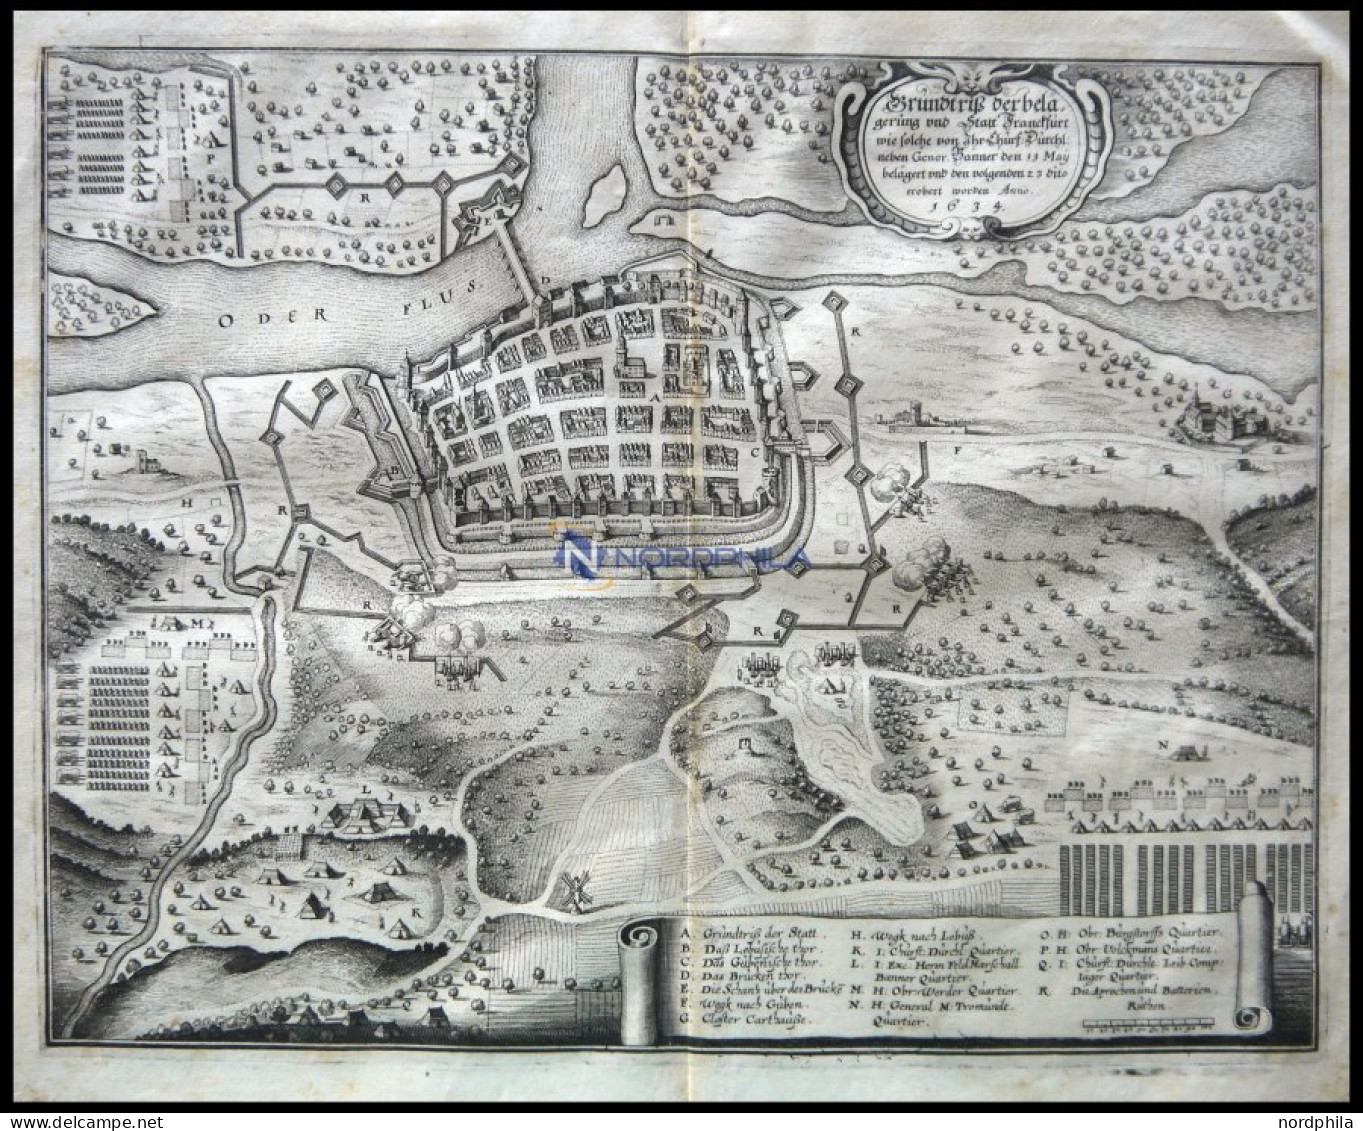 FRANKFURT/ODER, Grundriß Und Belagerung Im Jahre 1634, Kupferstichum 1700 - Prints & Engravings